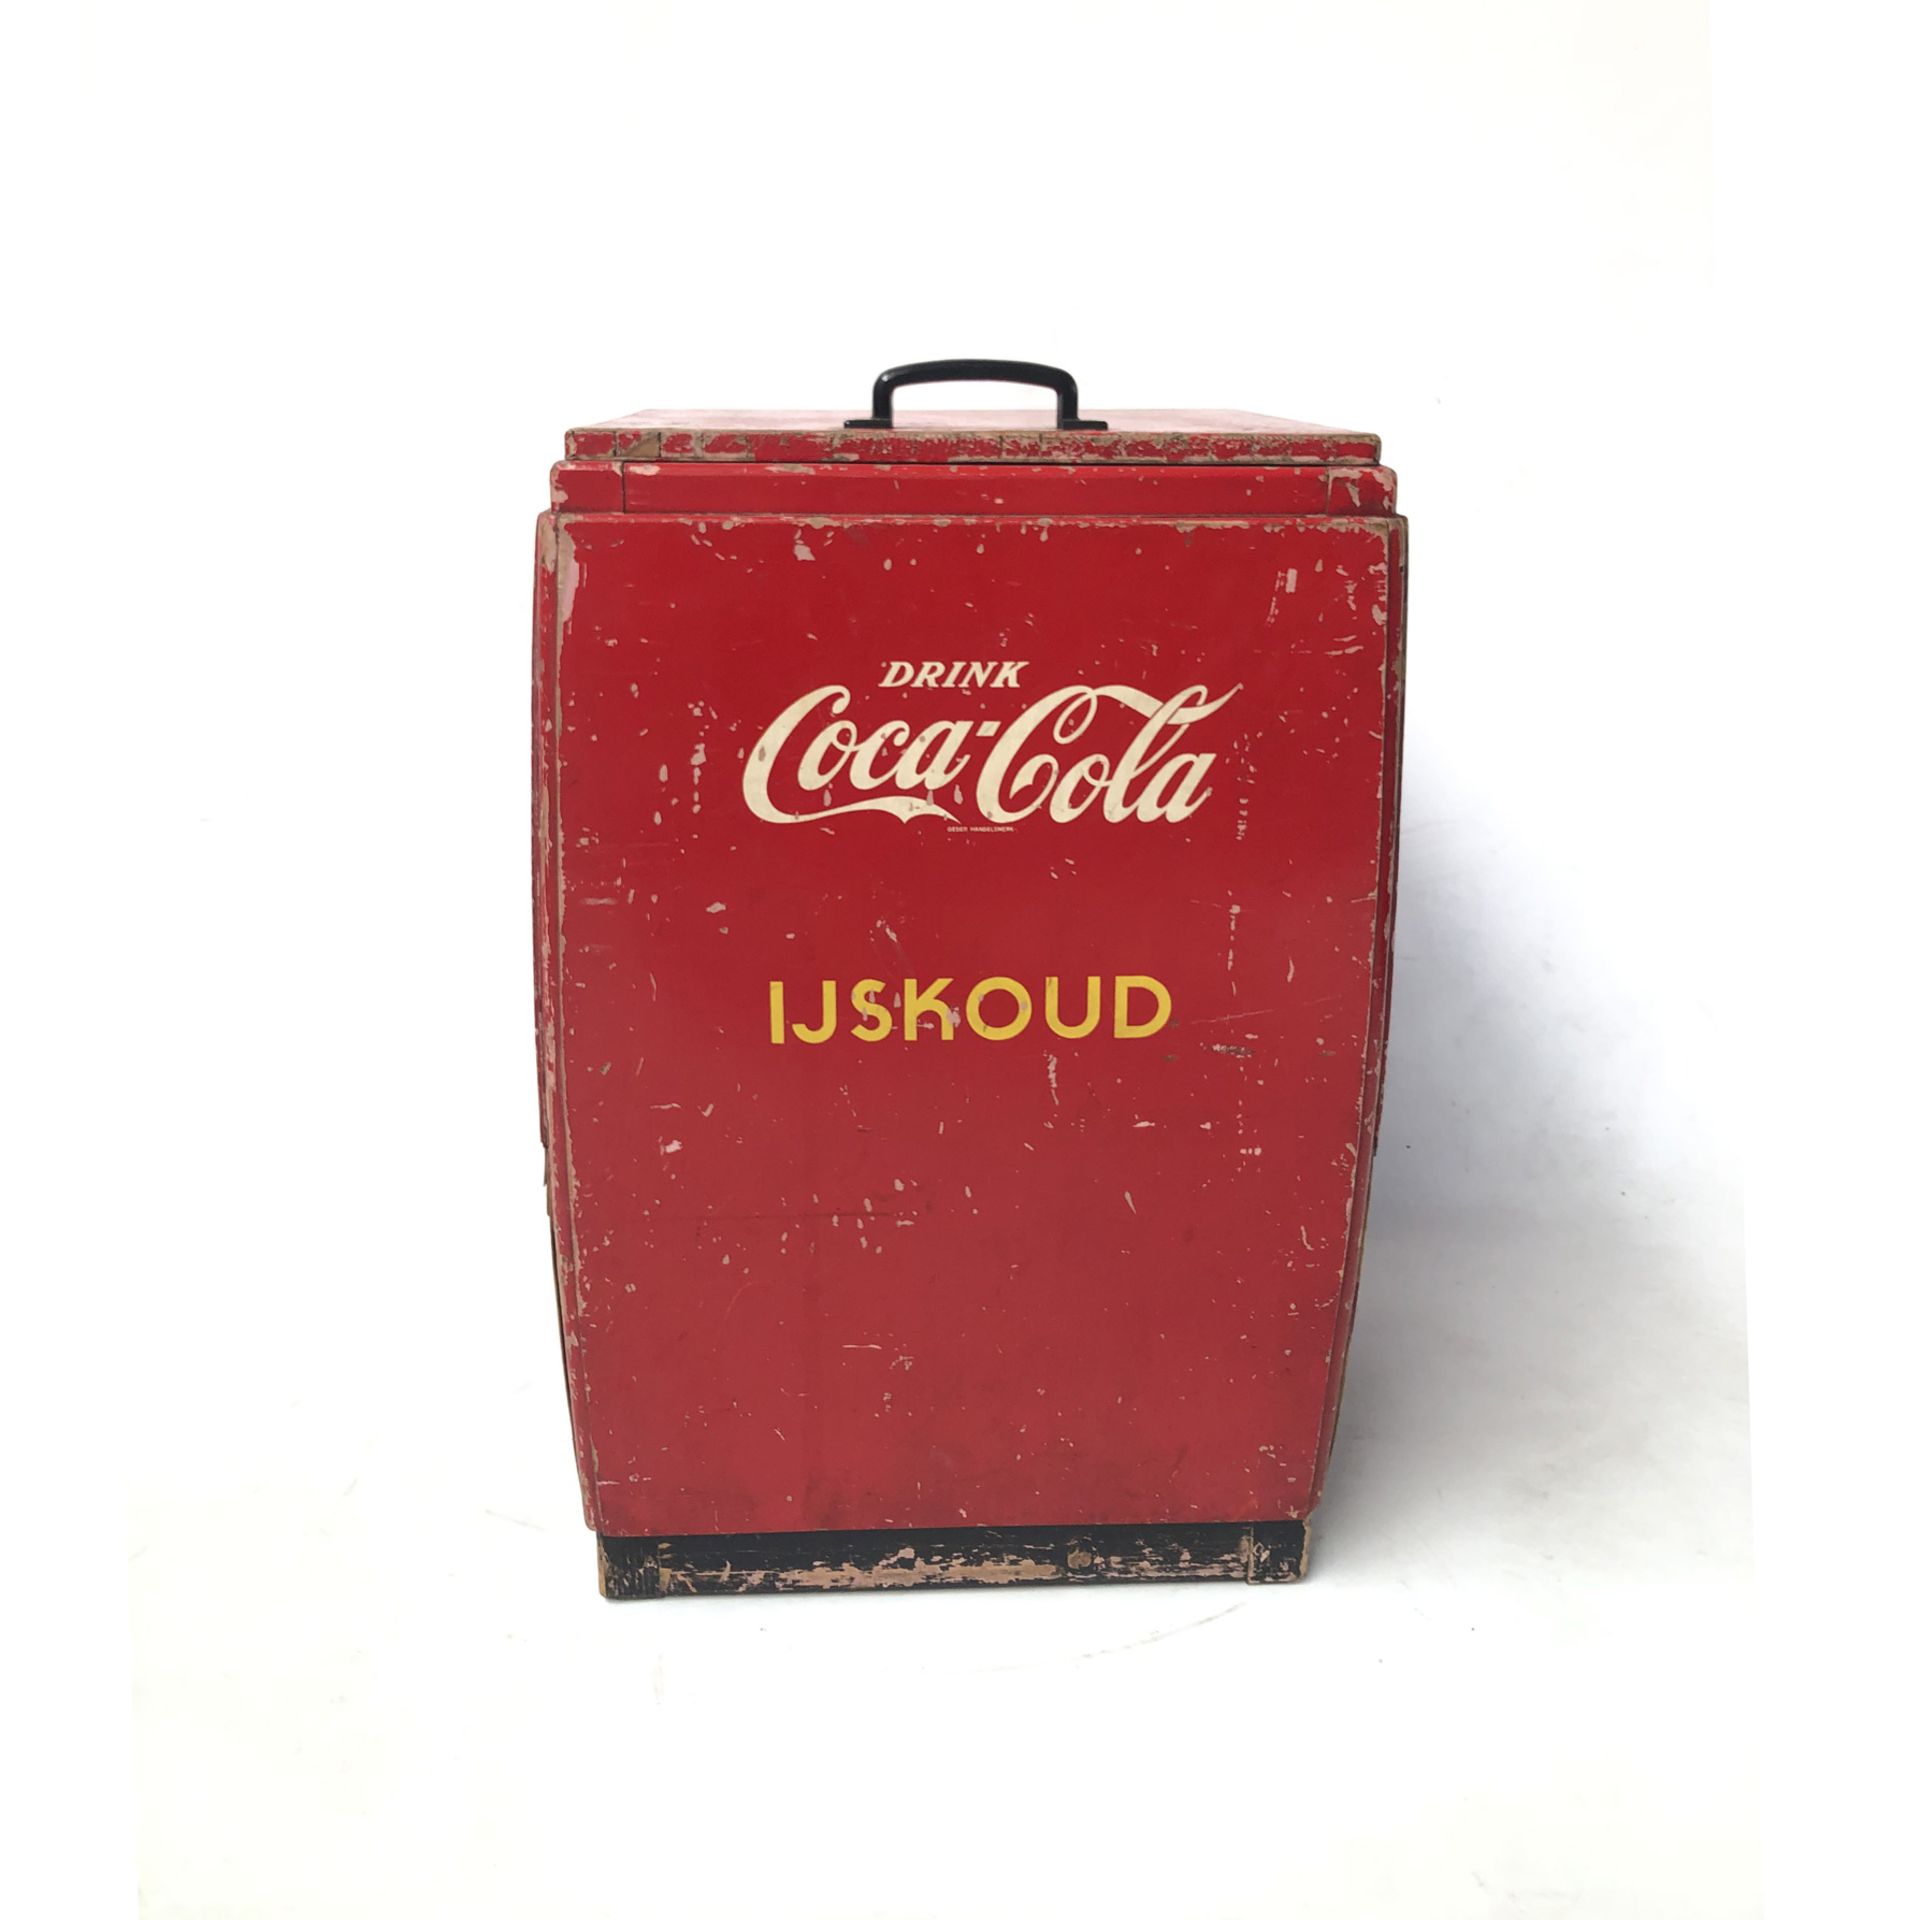 Original Vintage Dutch Wooden Coca-Cola Ice Box - Image 4 of 4